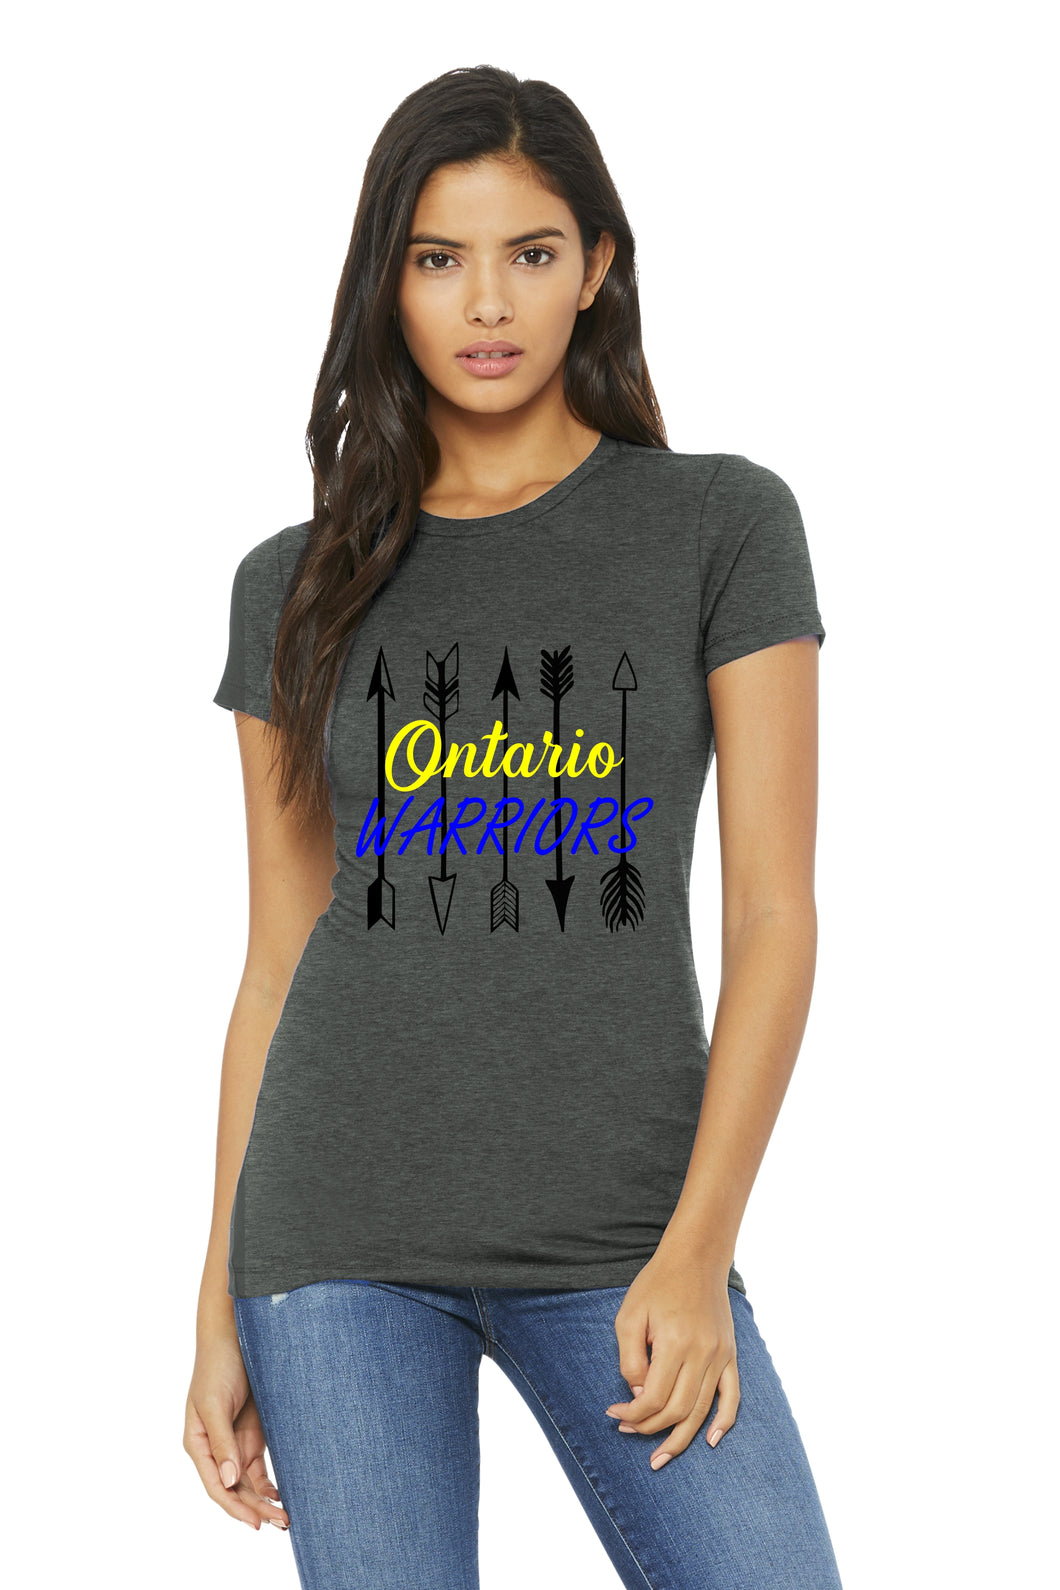 Ontario Warriors Arrows Women's